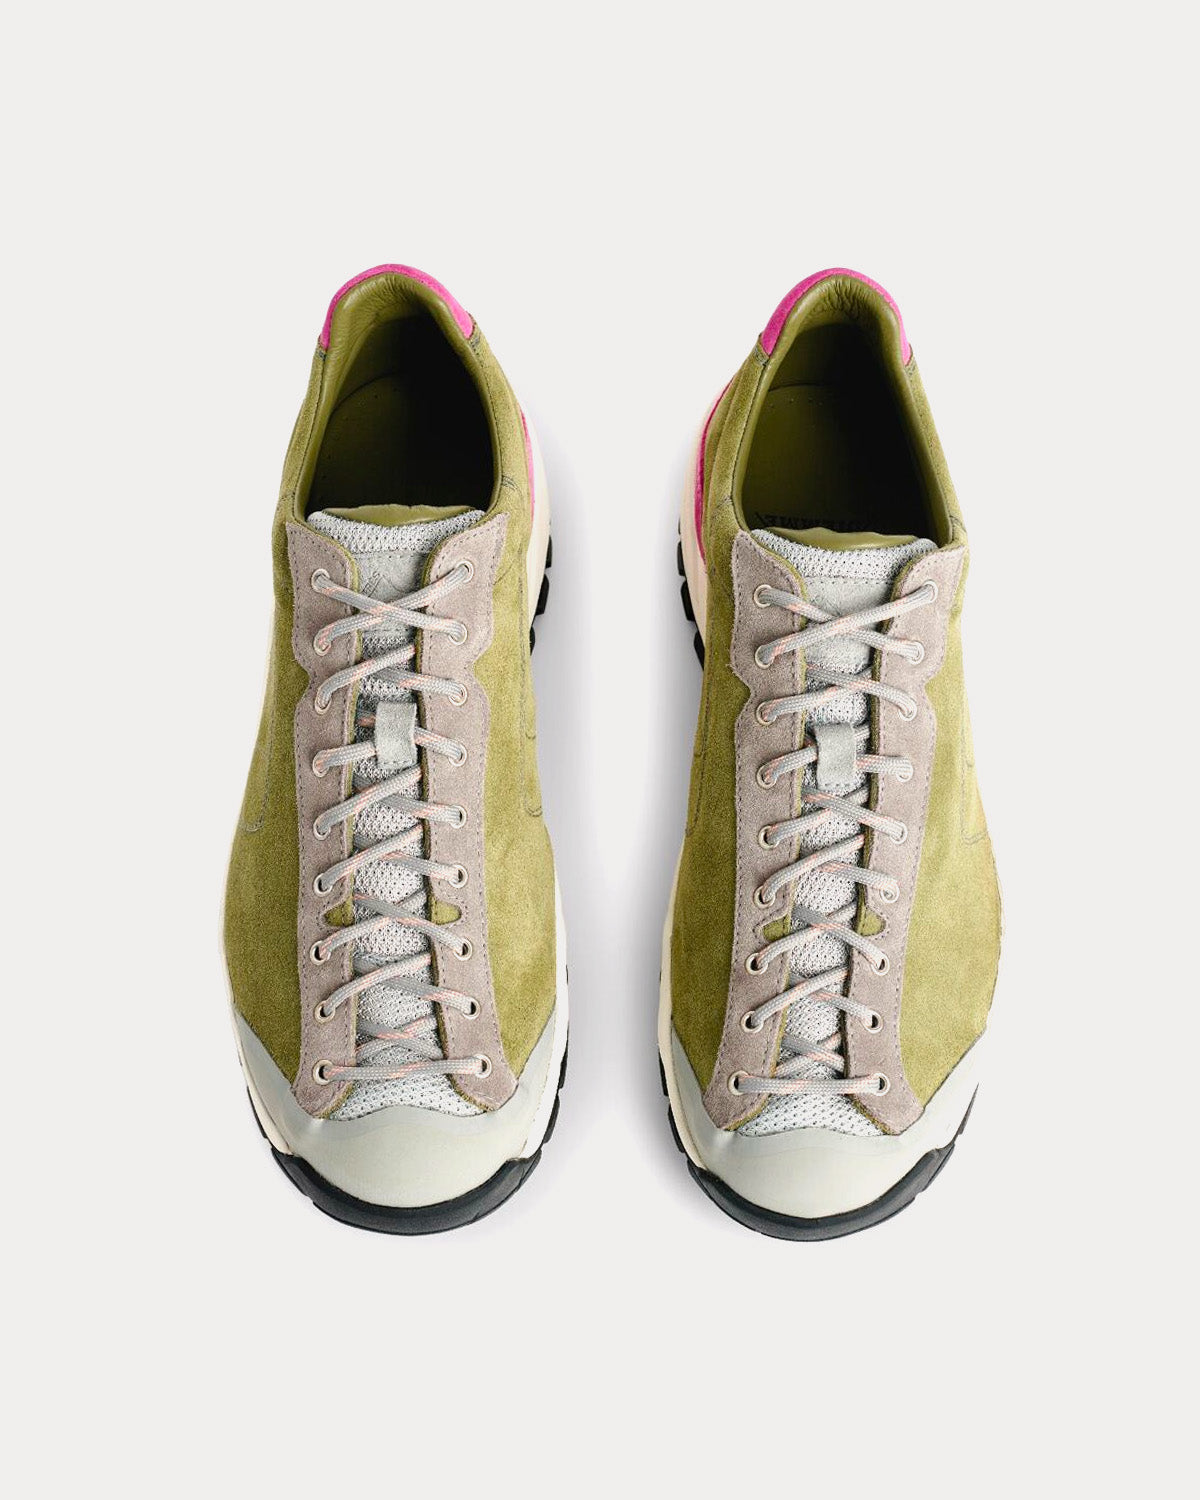 Diemme x Très Bien - Movida Suede Hiker Olive Low Top Sneakers